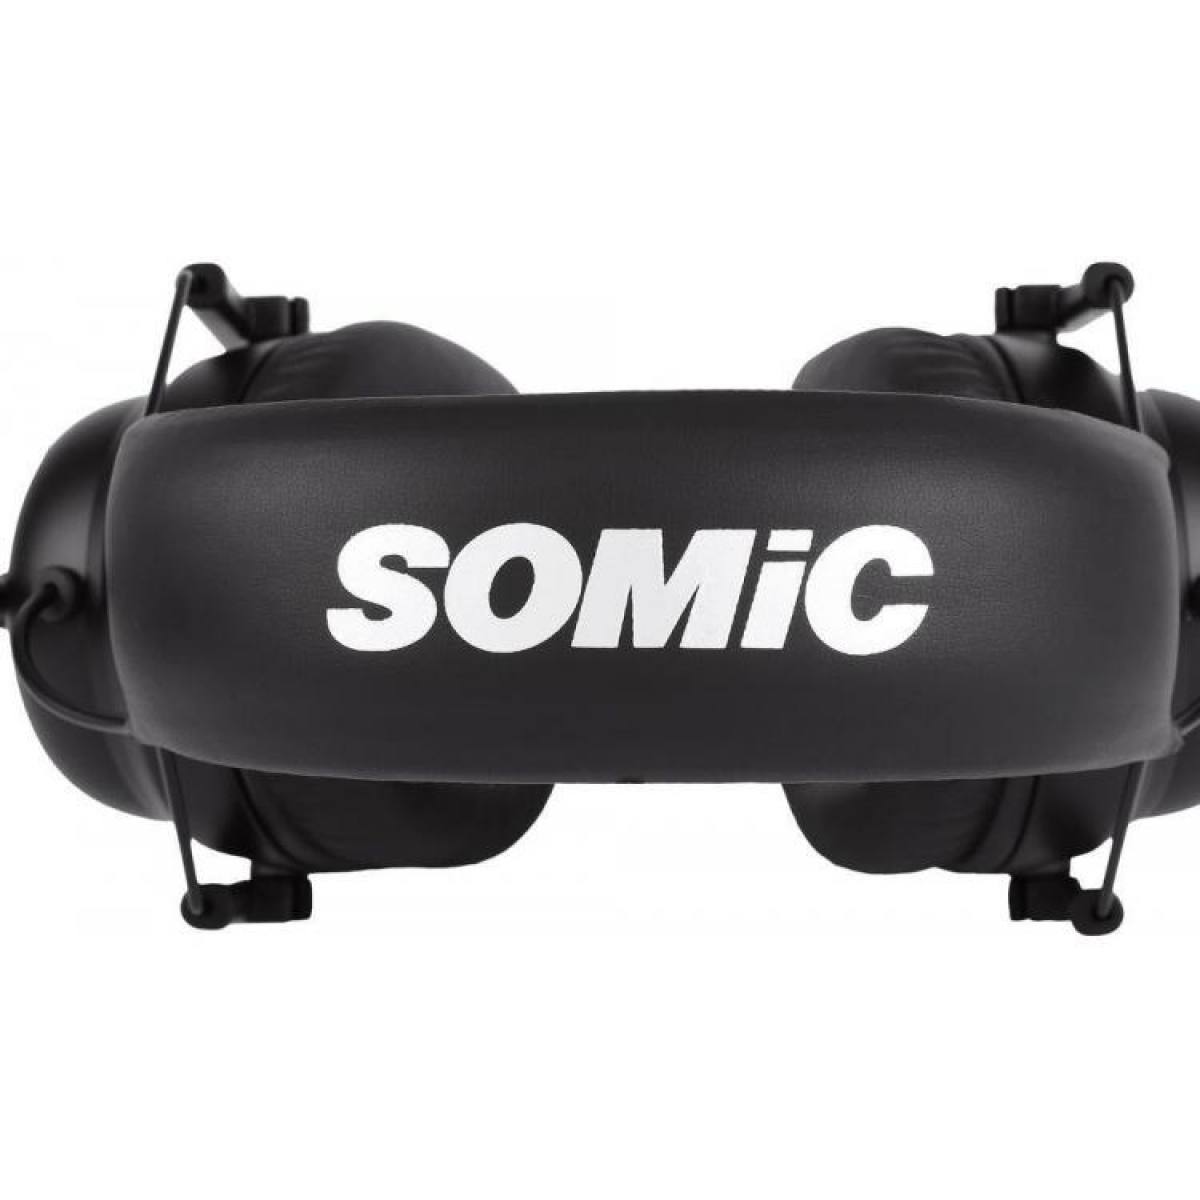 Tai nghe Somic G936 - 7.1 Gaming Headset